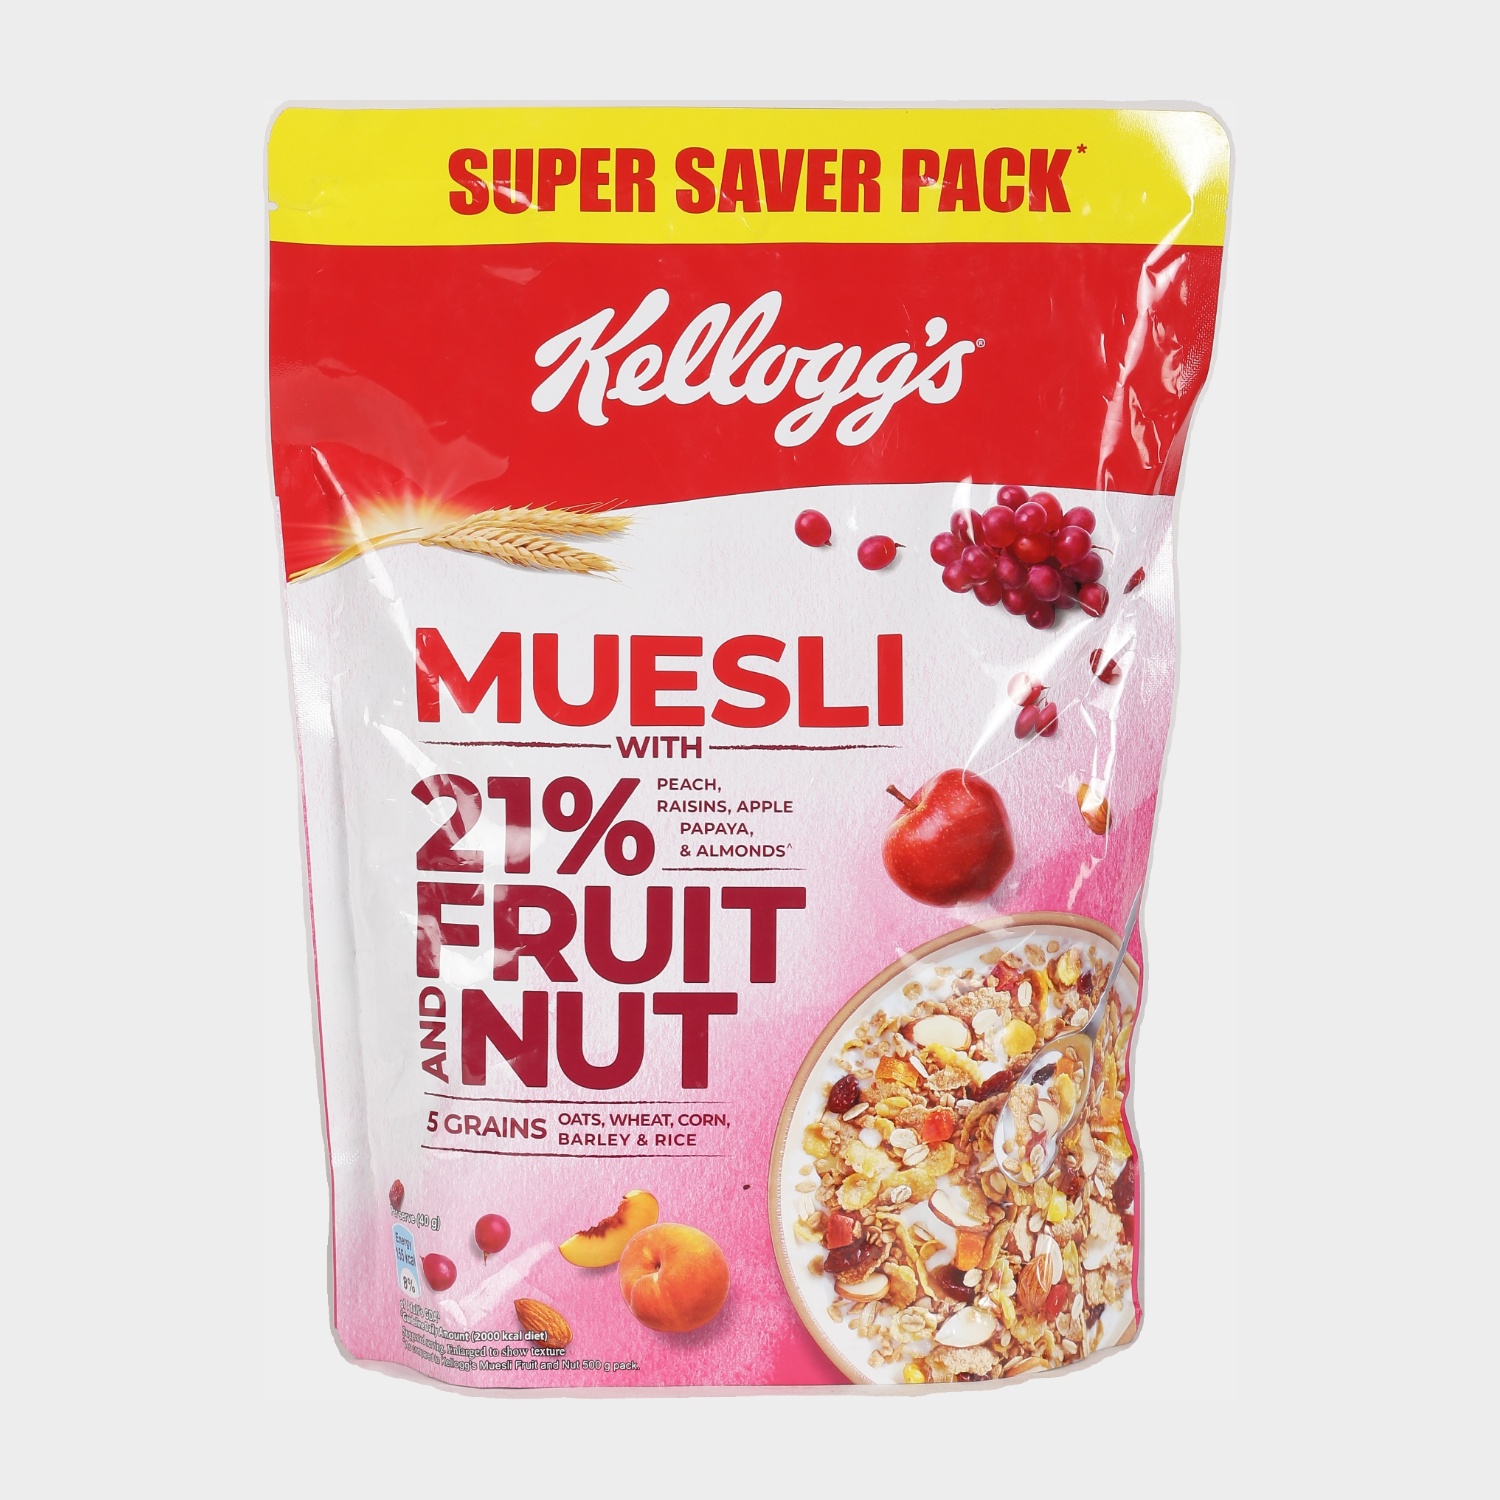 Kellogg's Muesli Fruit  Nut Vishal Mega Mart India